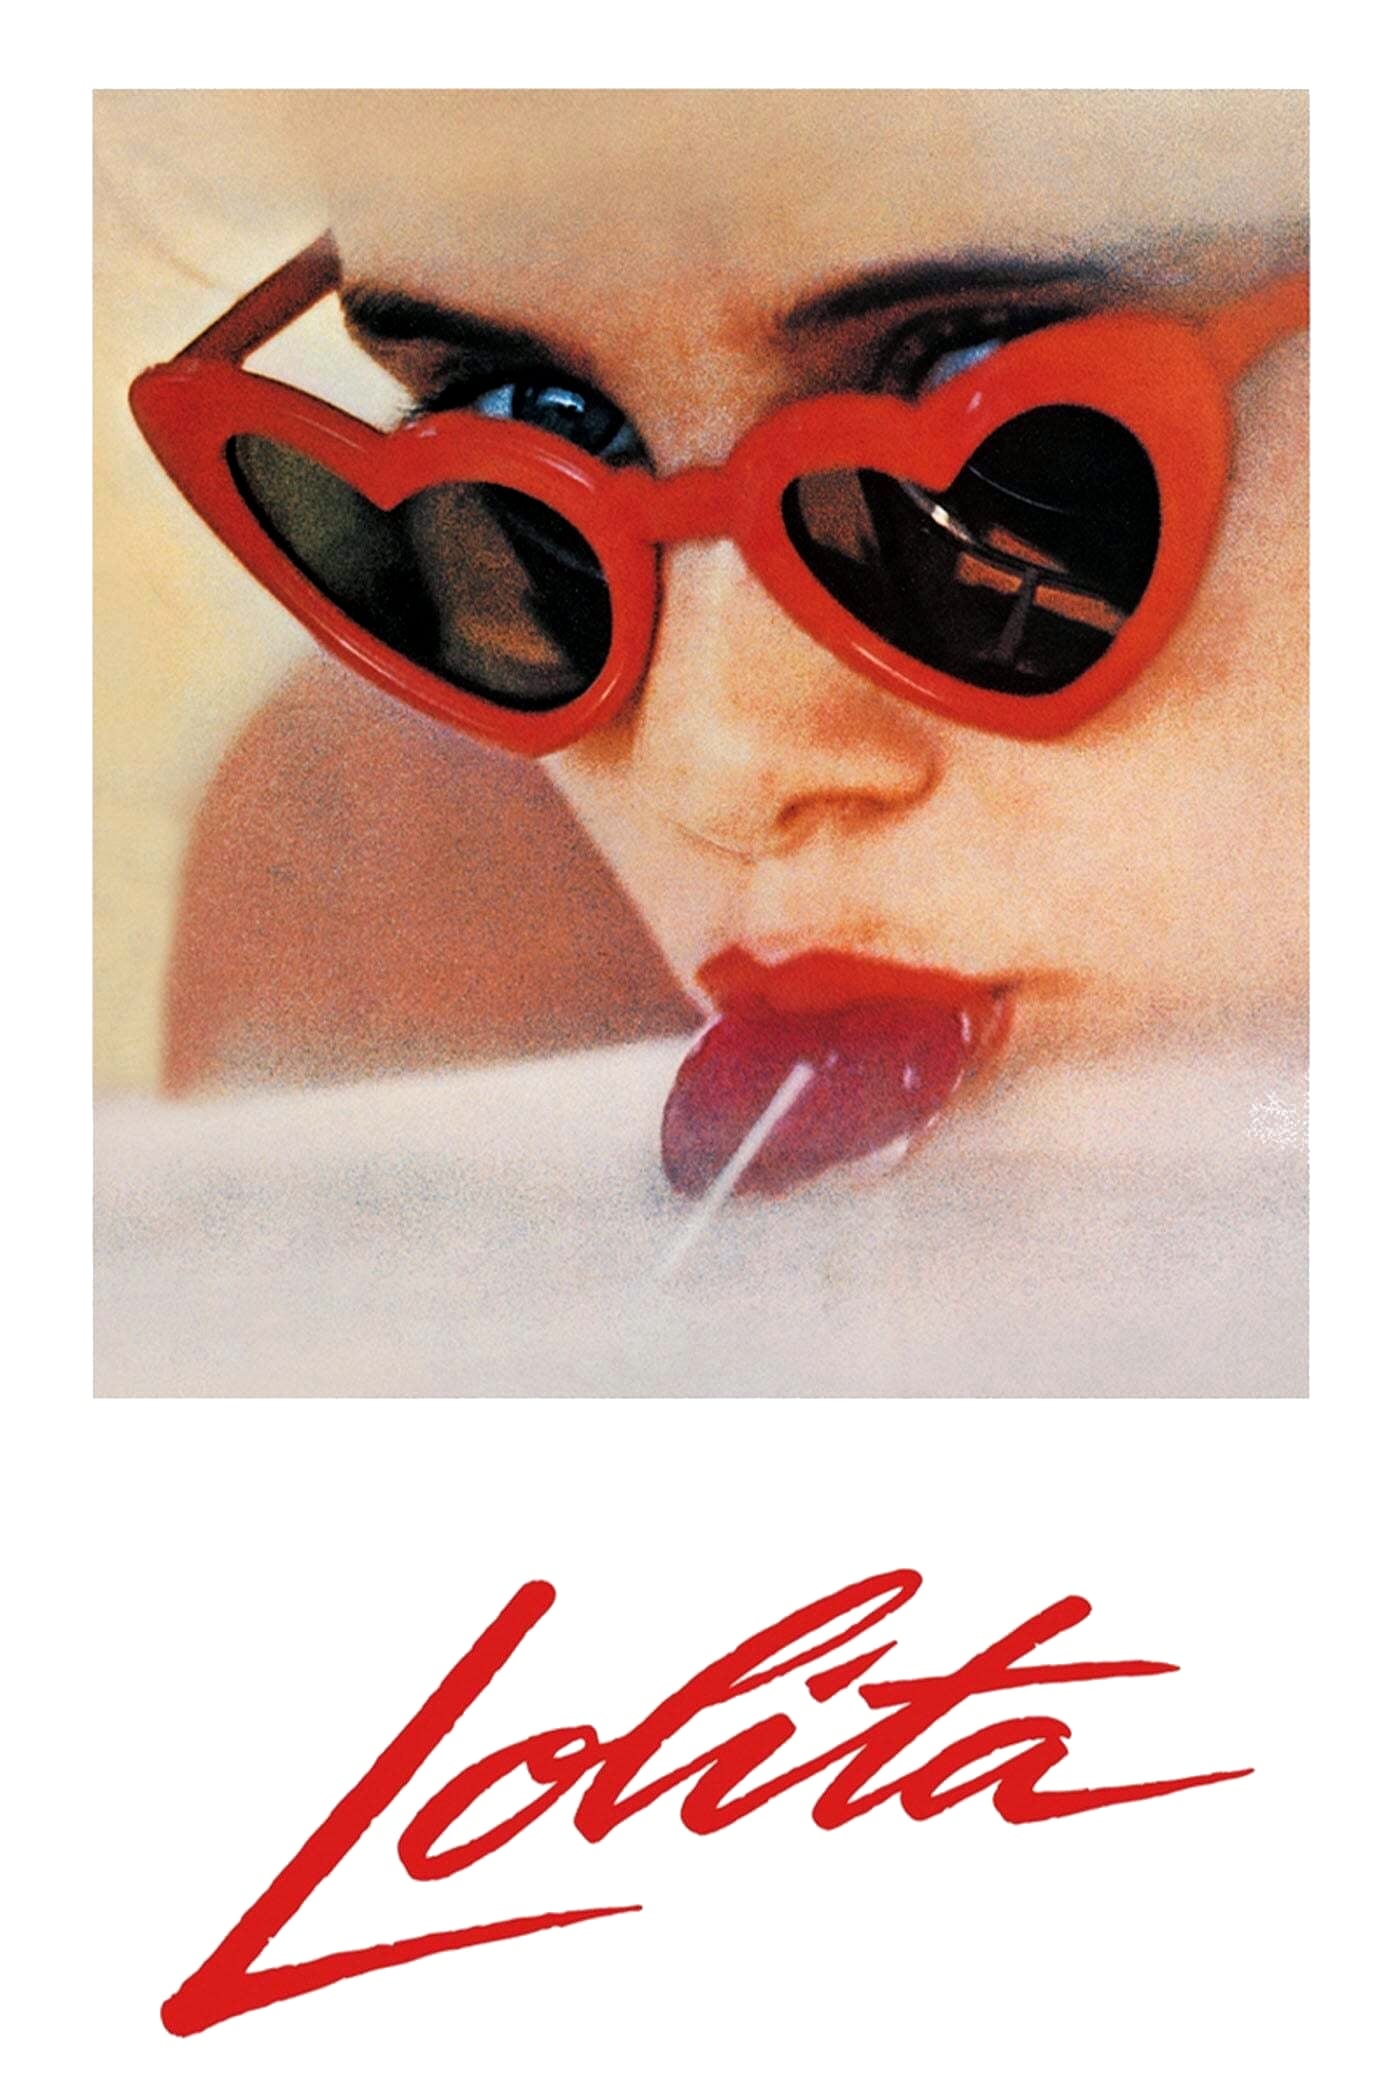 Banner Phim Chuyện Tình Nàng Lolita (Lolita)